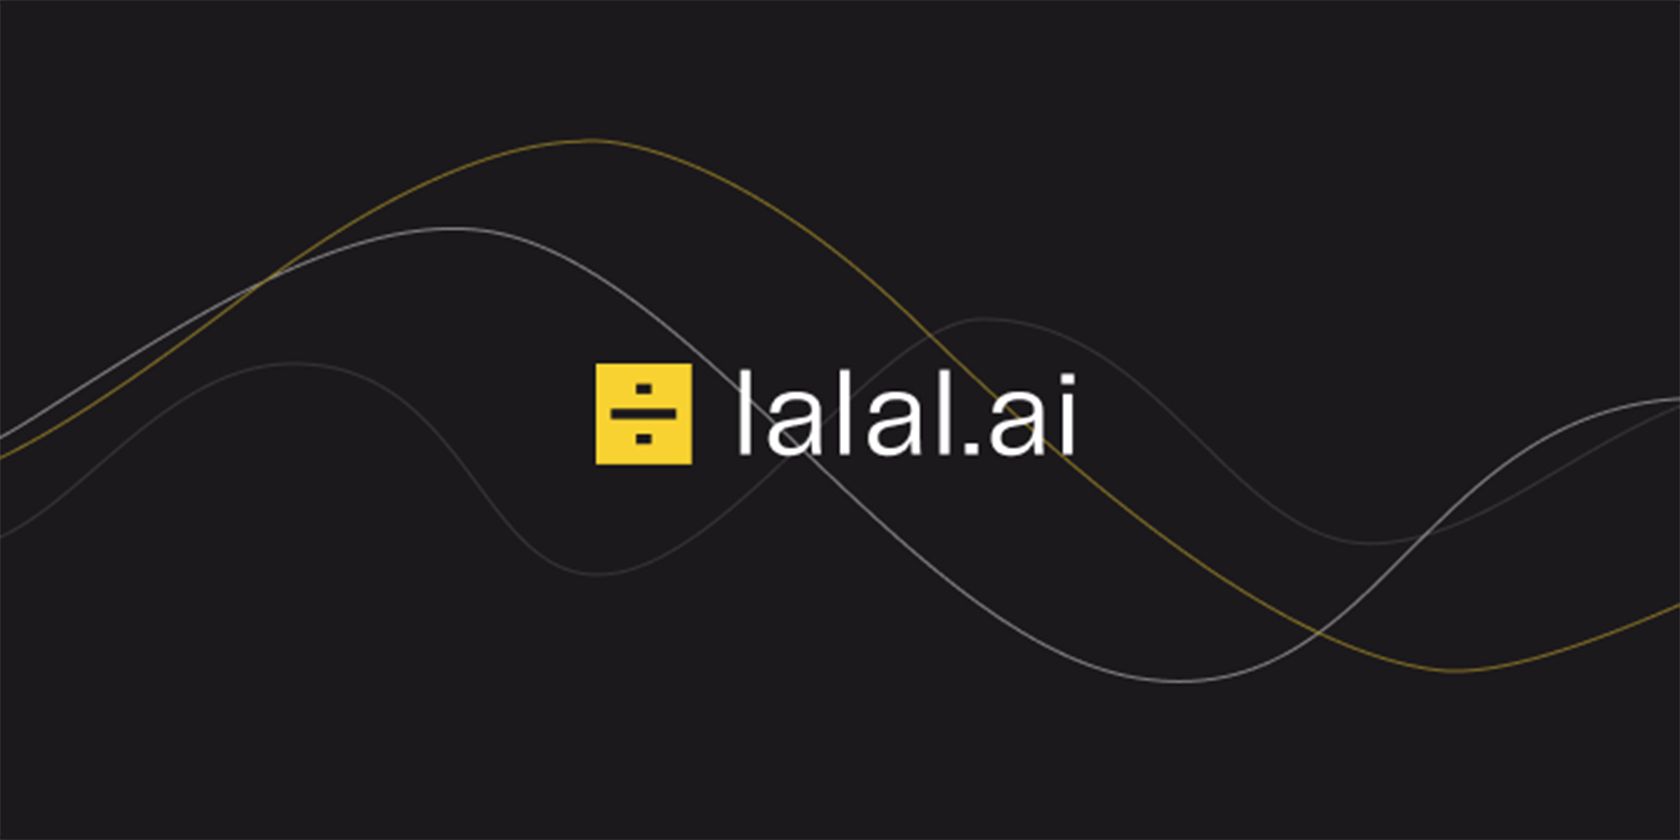 lalal-ai-featured